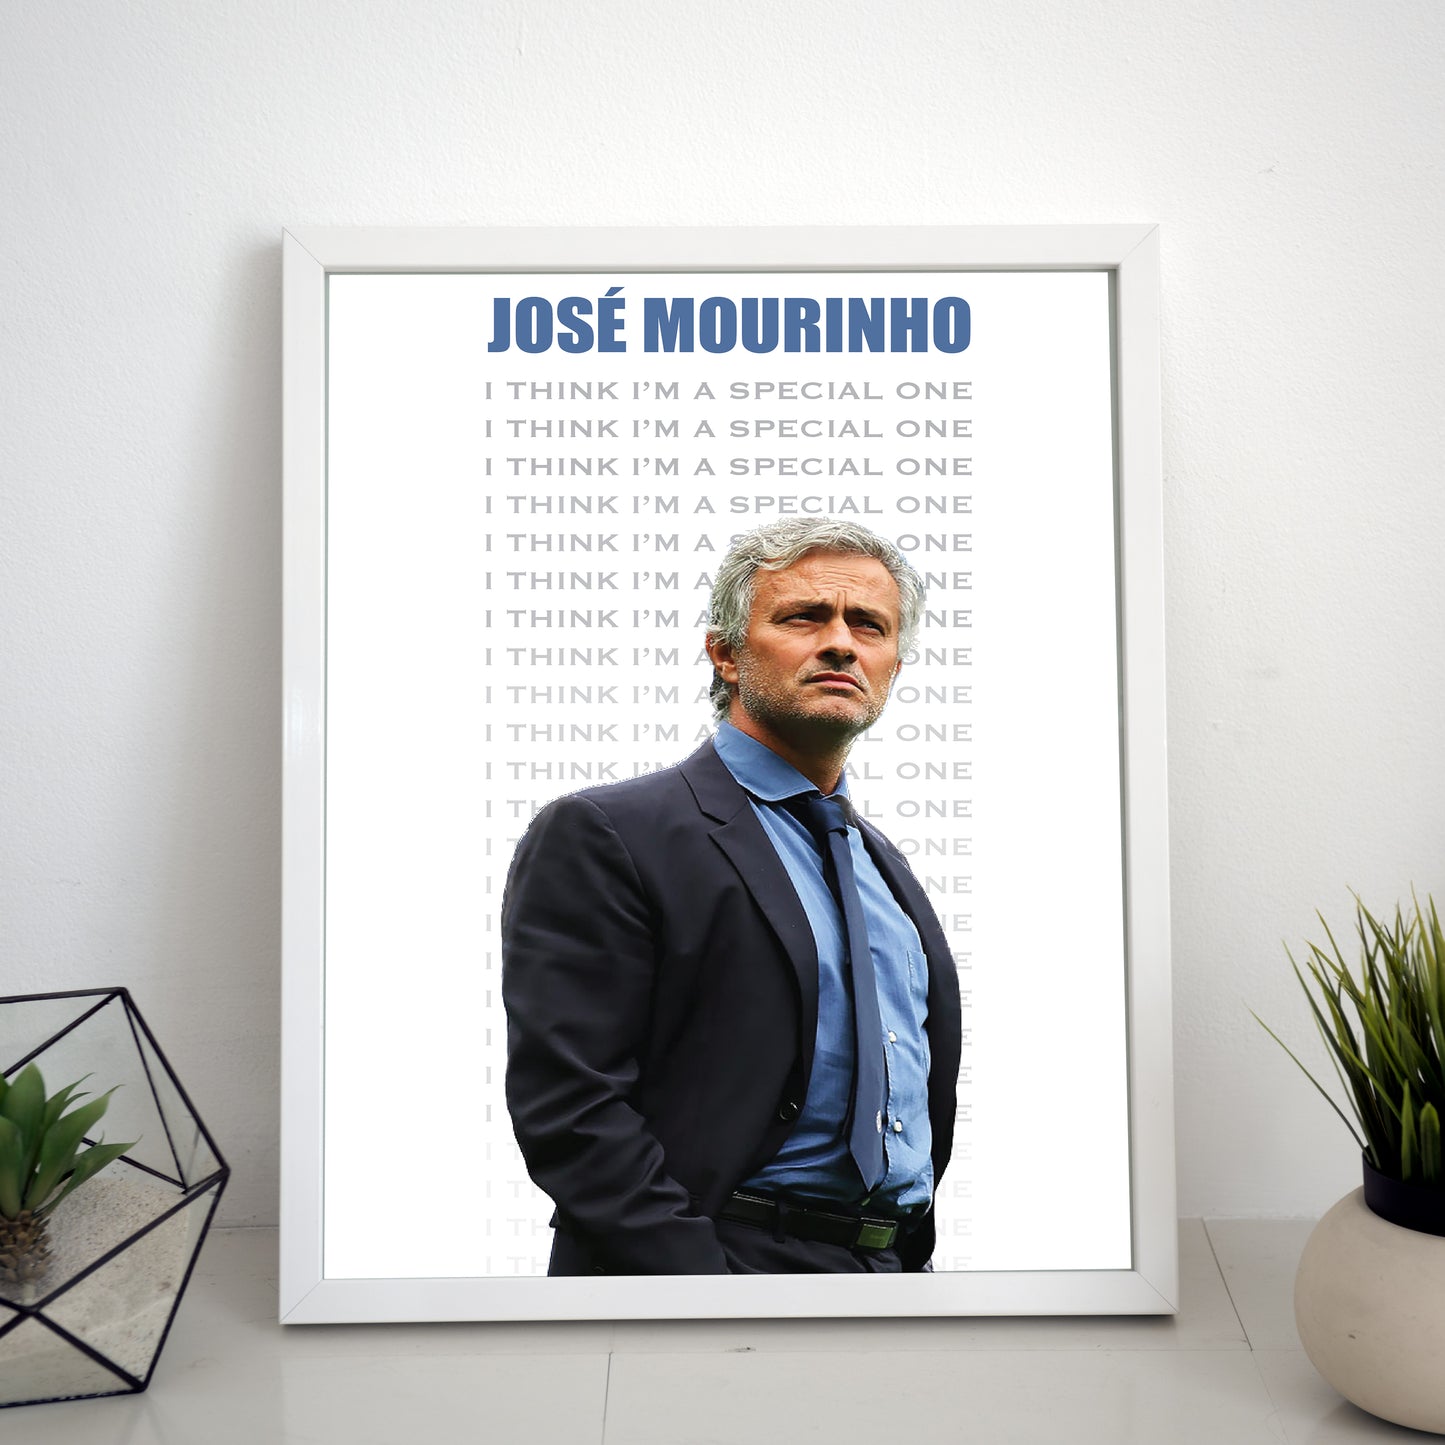 Jose Mourinho Frames